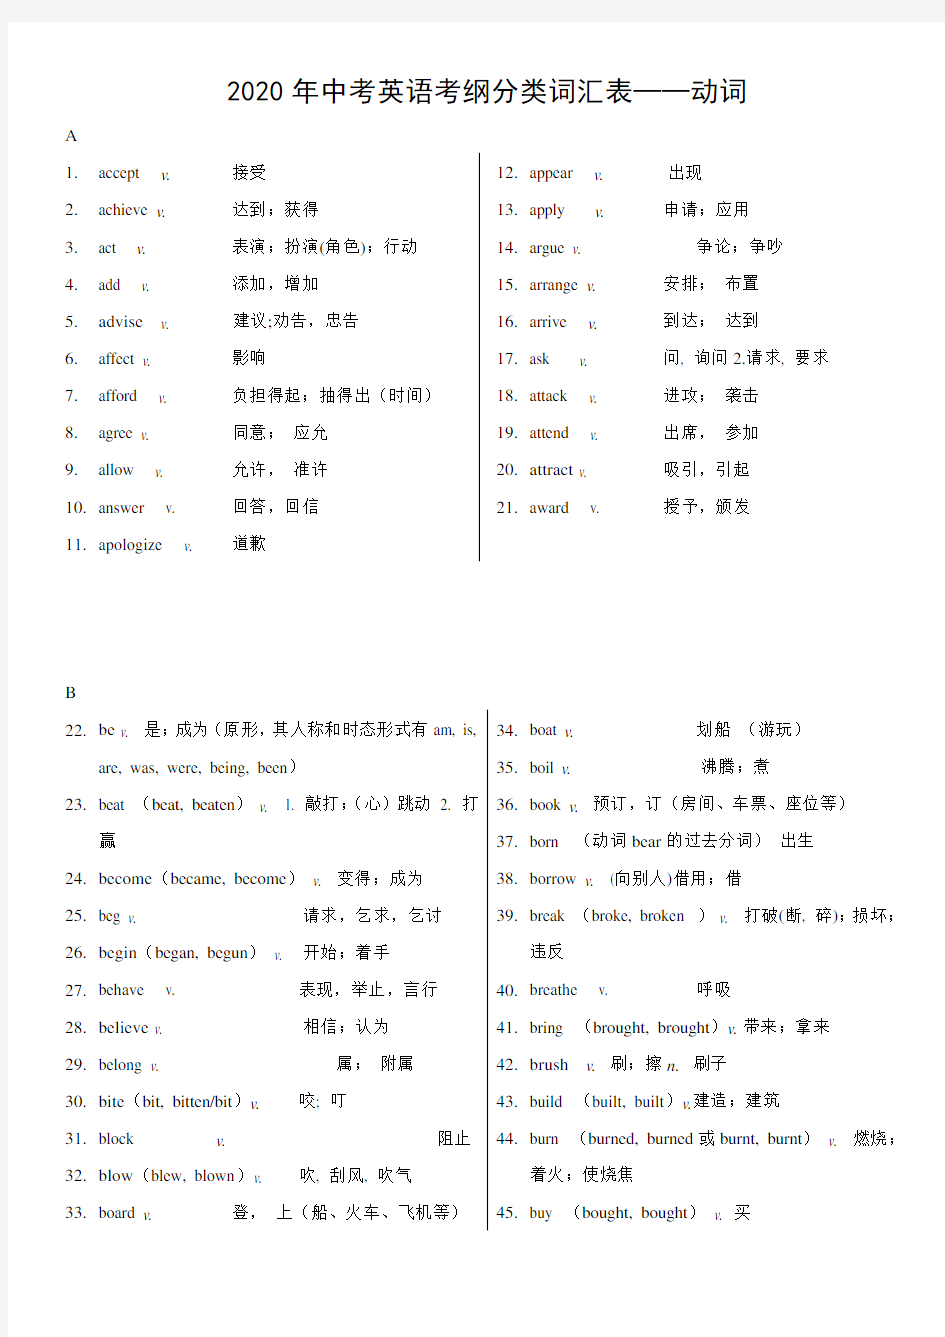 2020年上海中考英语考纲词汇分类表(动词)